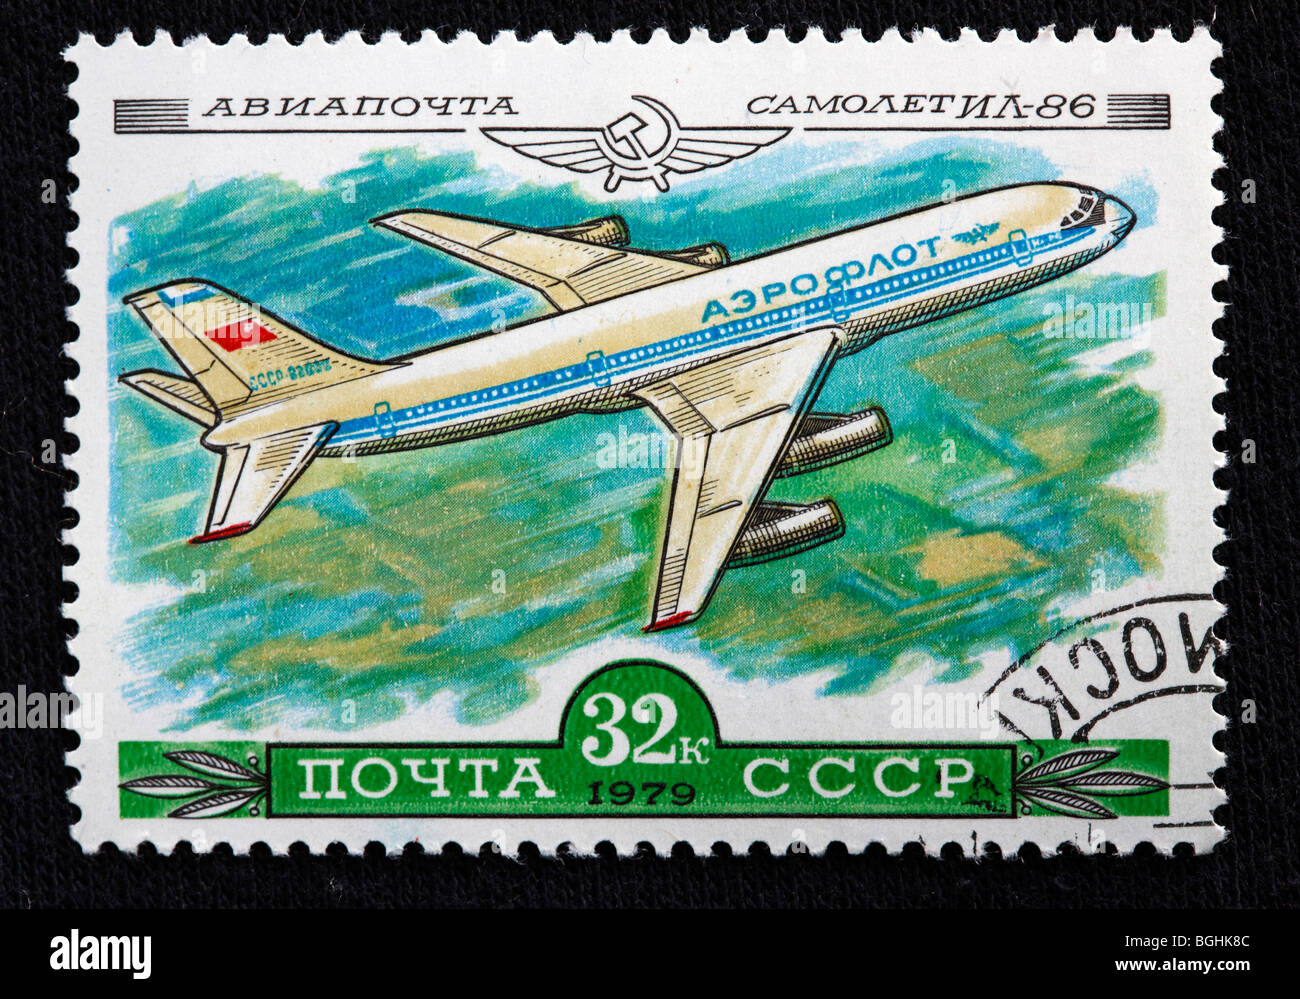 Historia de la aviación, Federación avión IL-86, sello, URSS, 1979 Foto de stock